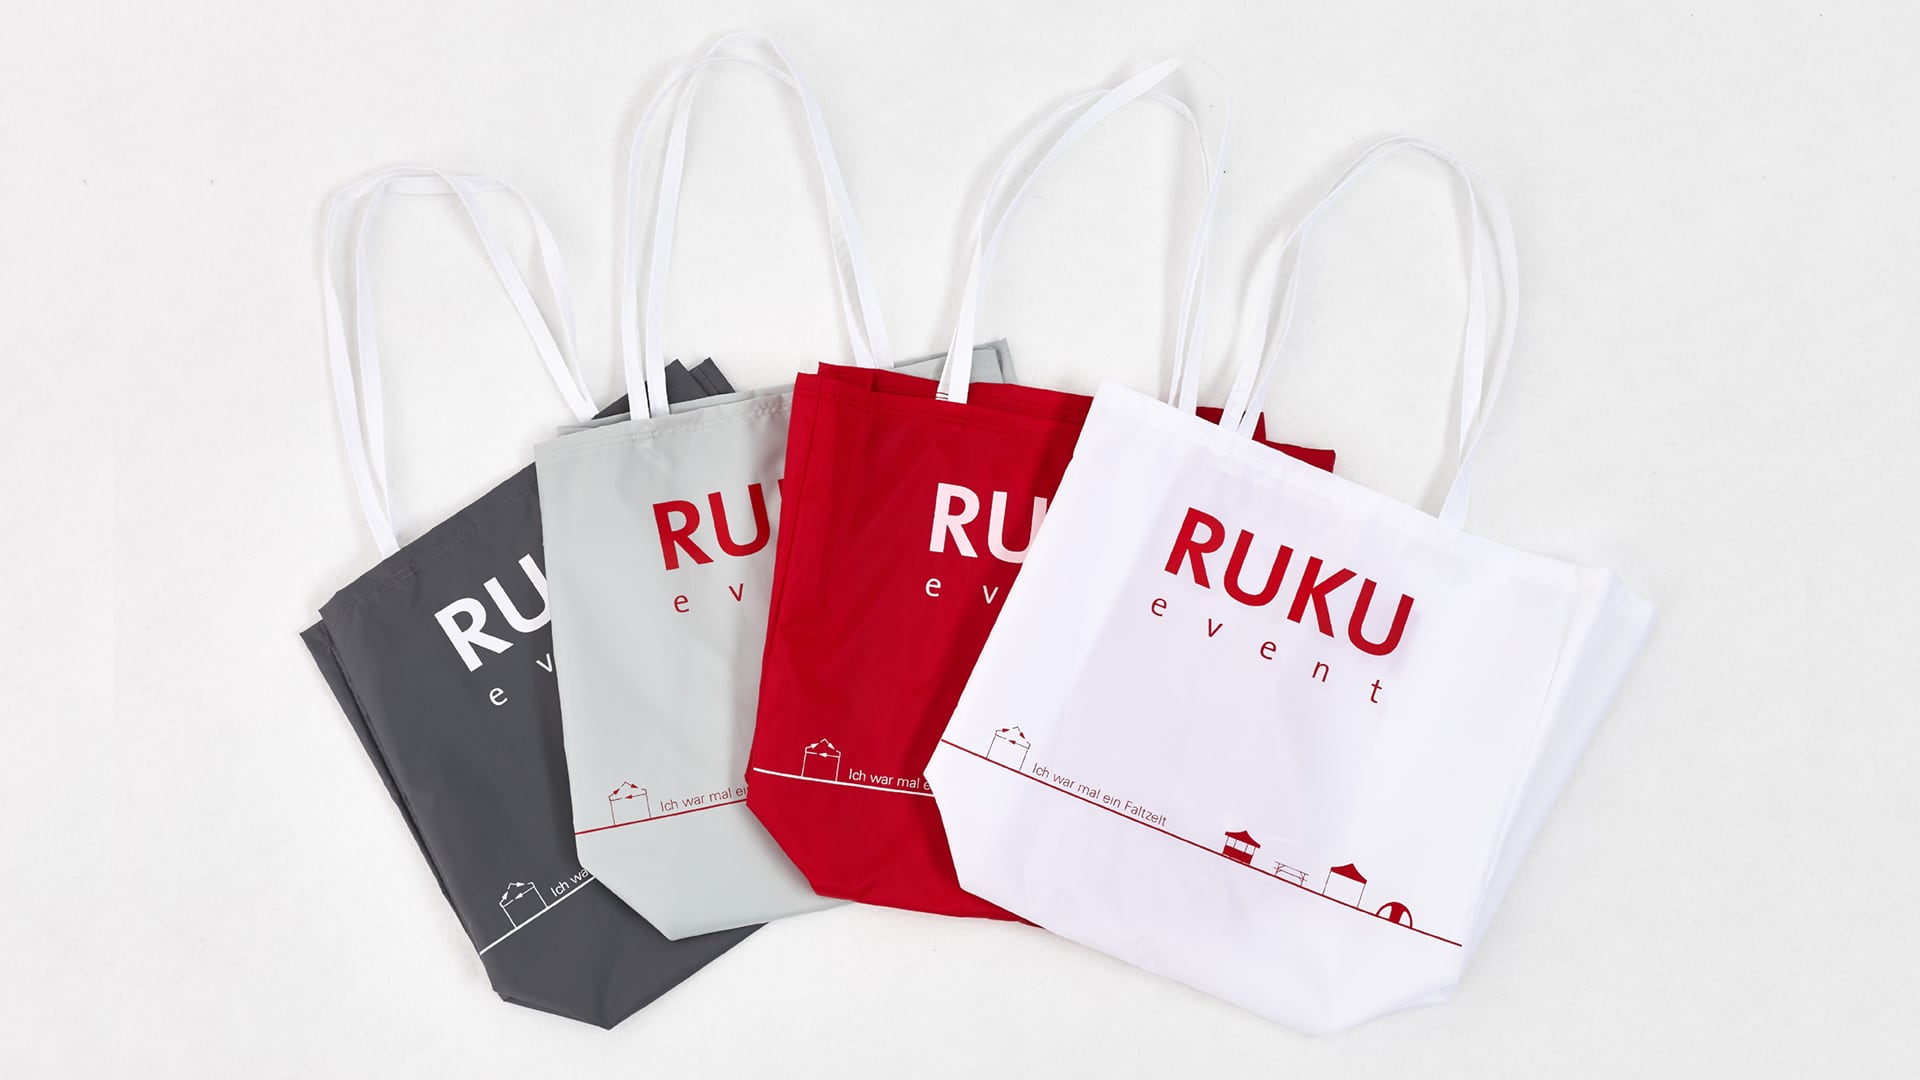 Die nachhaltigen RUKUevent Einkaufstaschen liegen nebeneinander überlappend in den Farben dunkelgrau, hellgrau, rot und weiß mit aufgenähtem RUKUevent Logo.